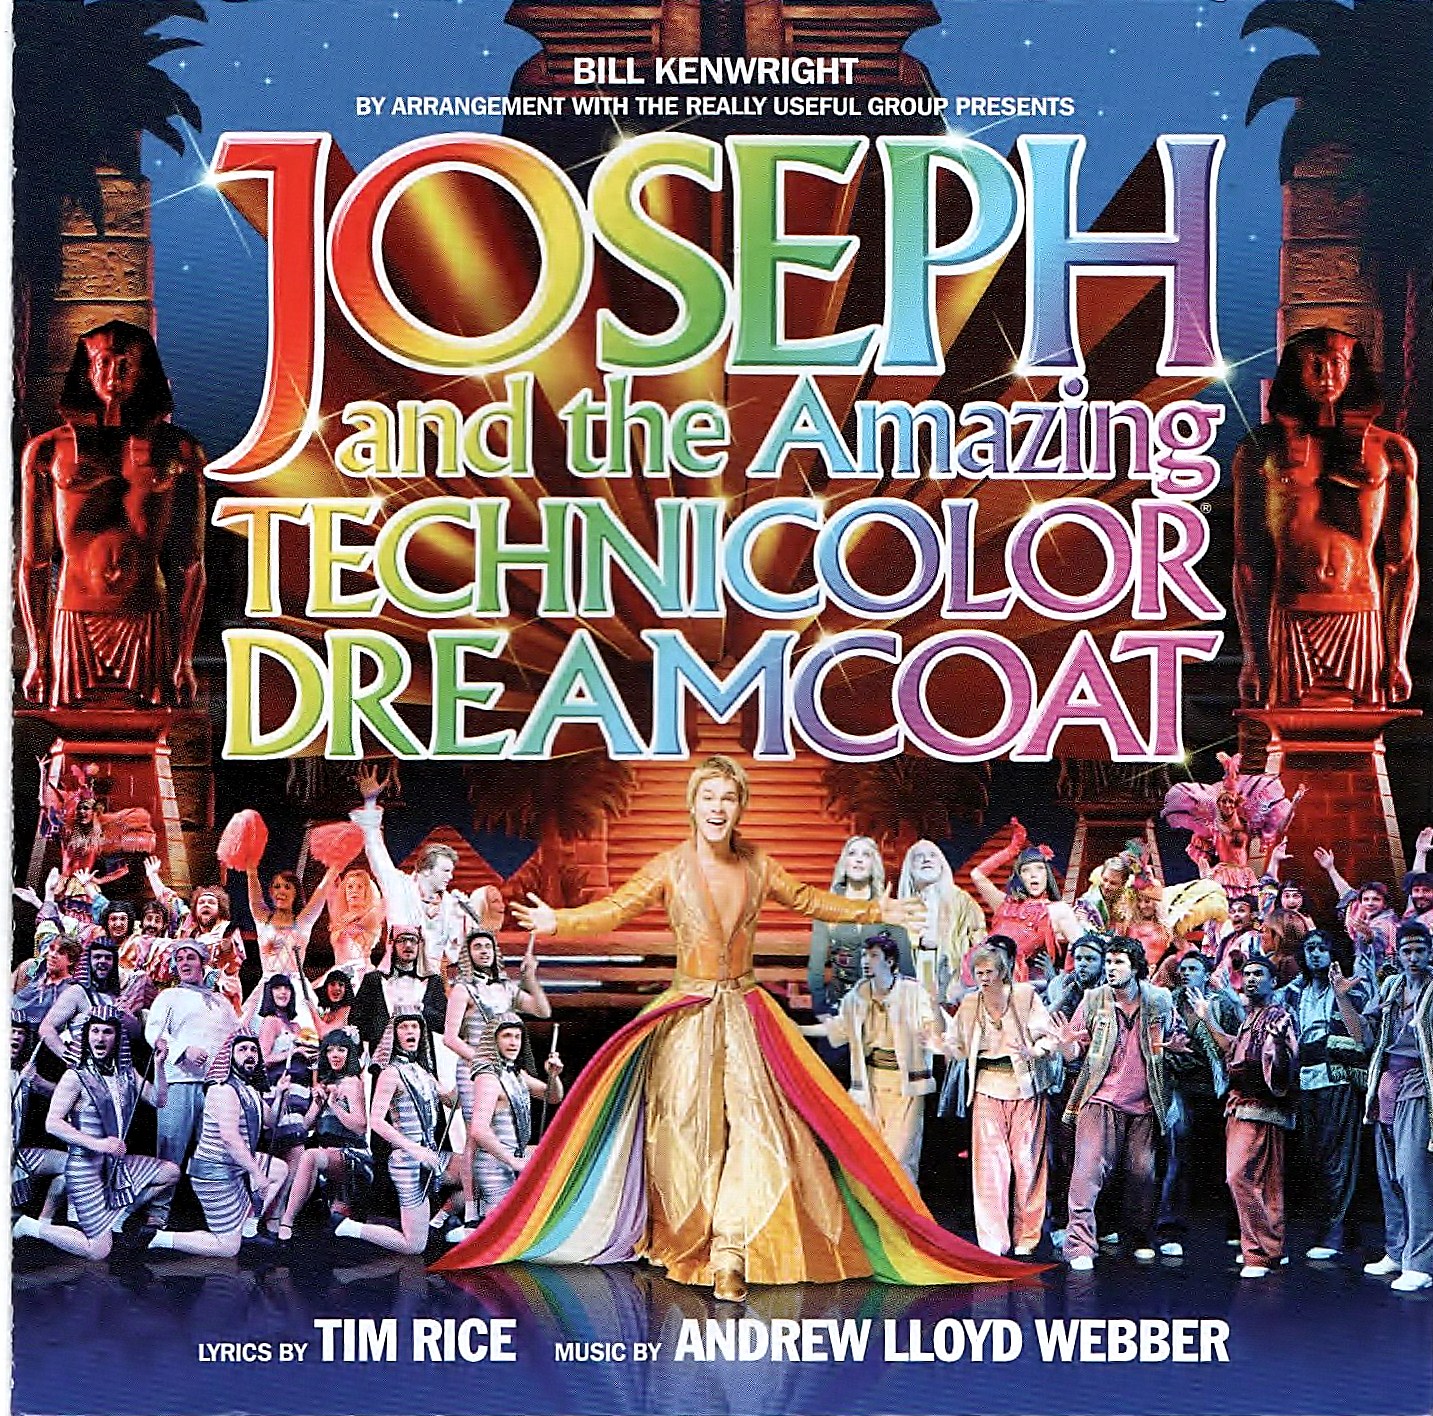 Joseph and the Amazing Tehnicolor Dreamcoat